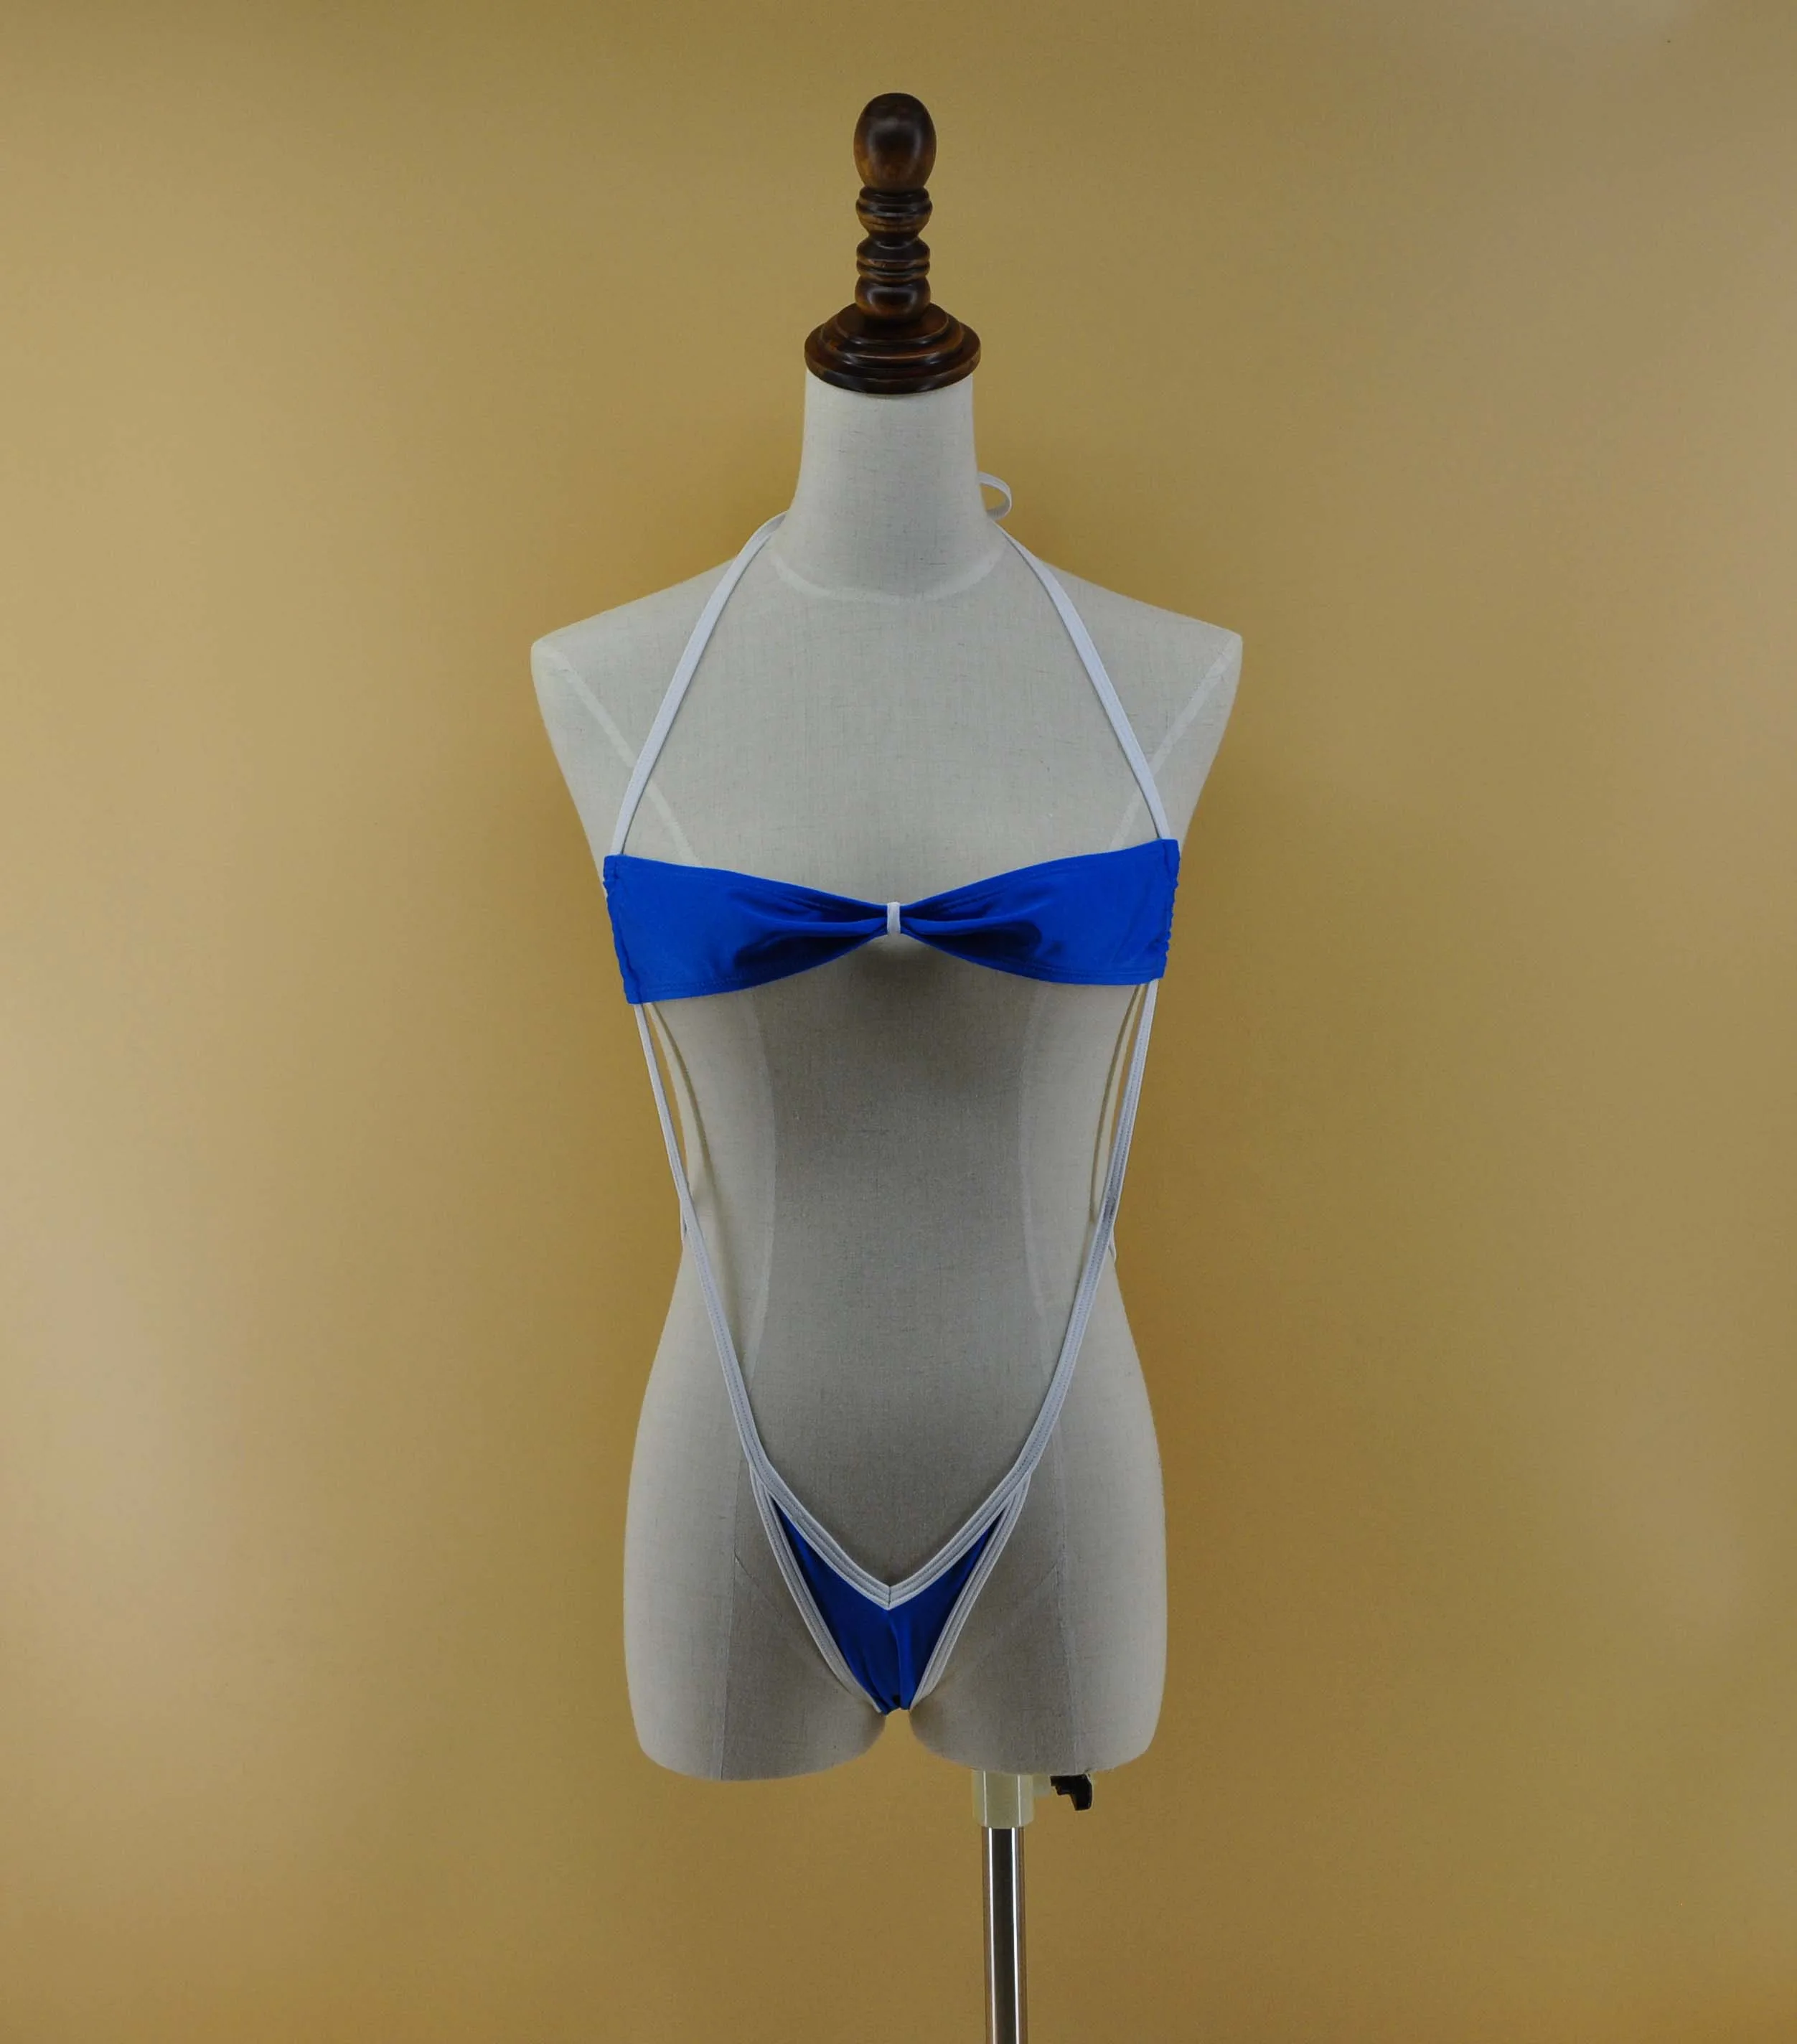 Сексуальный сине-белый женский слингкороткий микро Монокини, сдельный купальник, стринги, купальные костюмы, сексуальный пляжный купальник sunkini для женщин - Цвет: Blue White